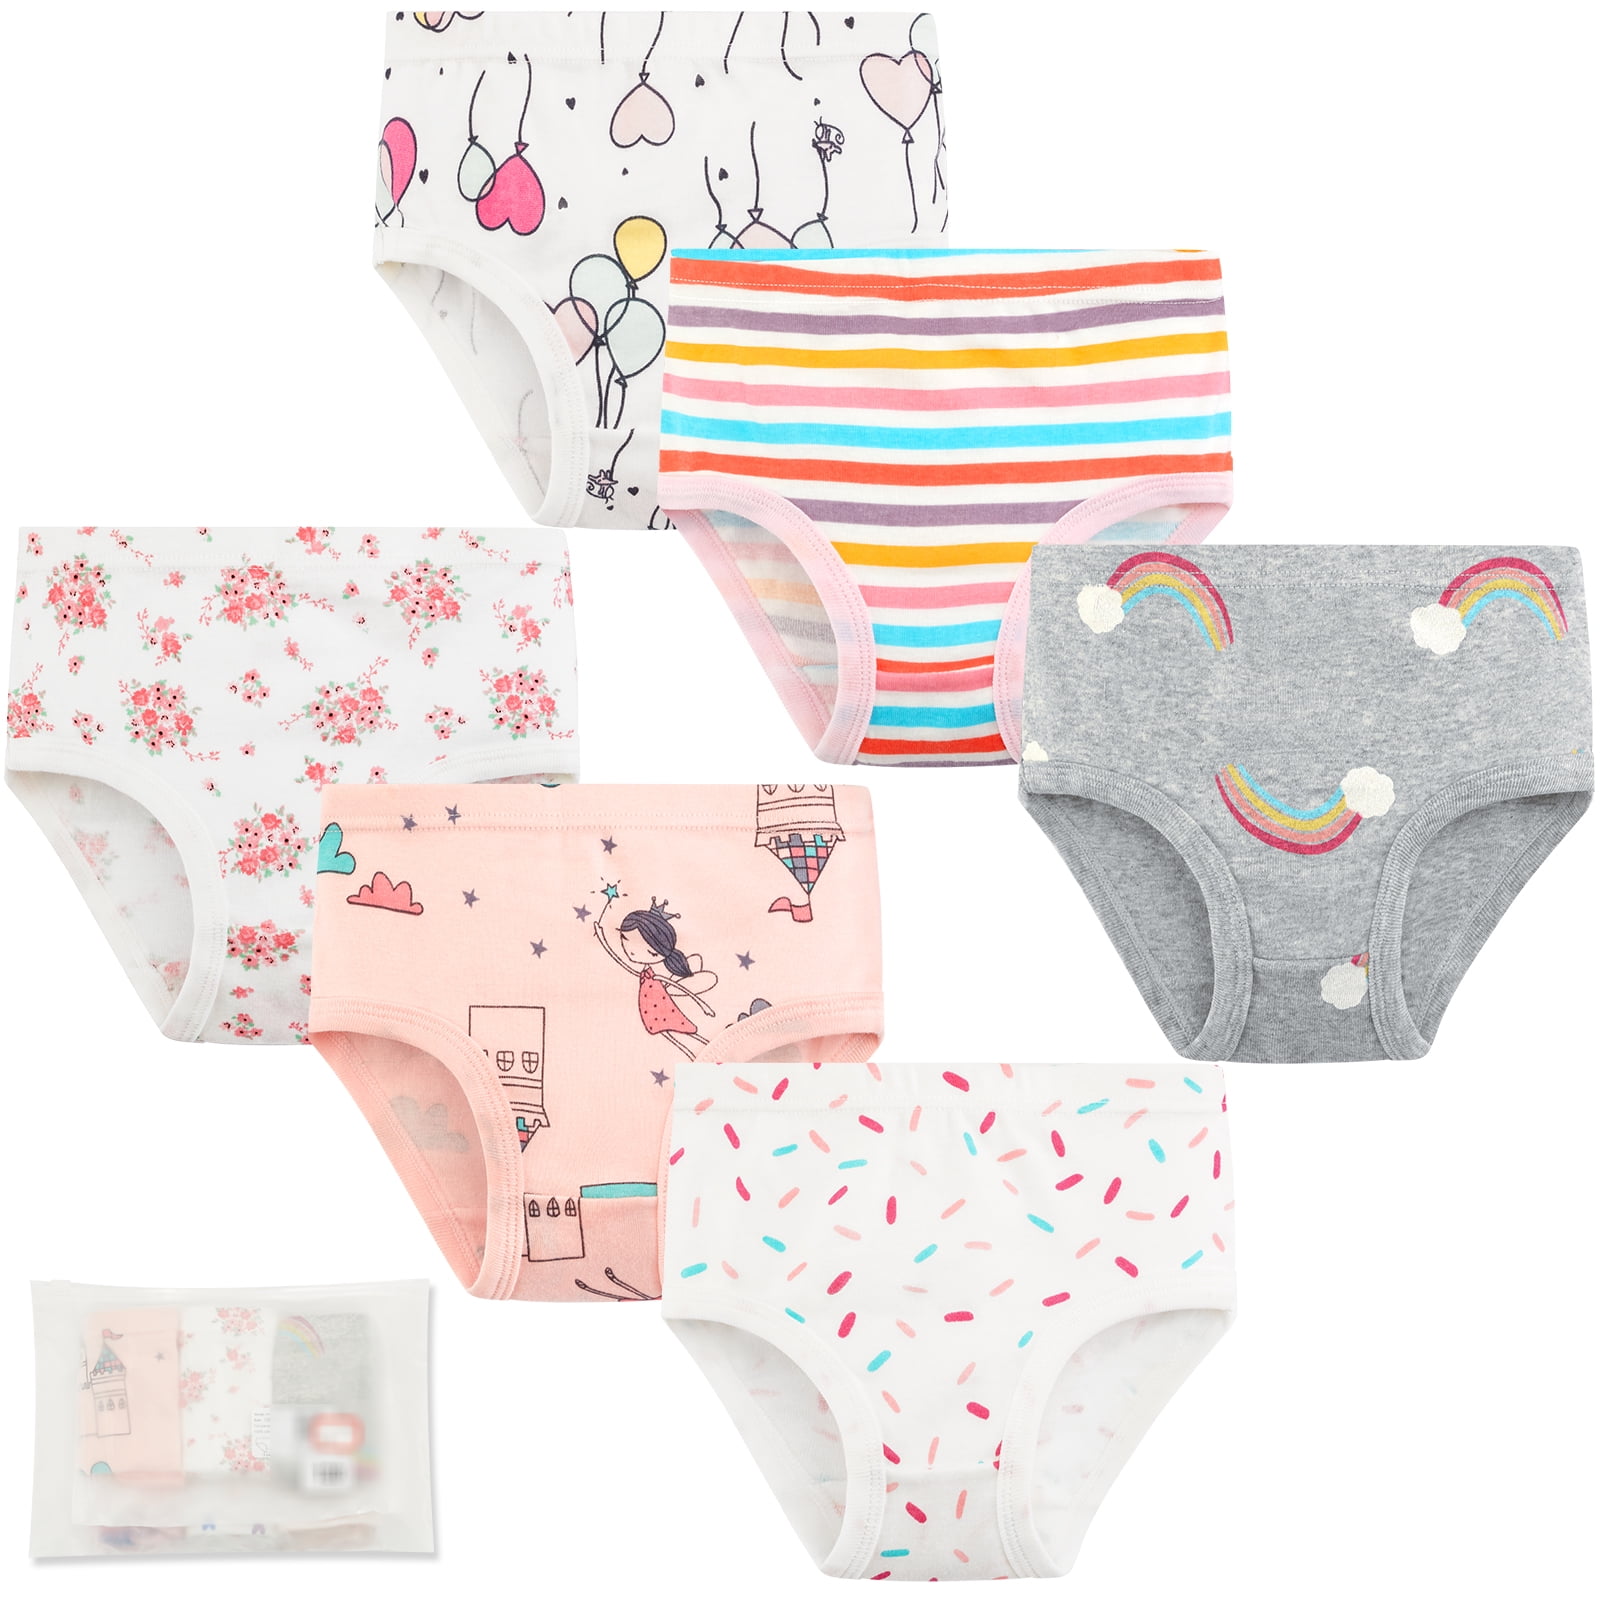 Little Girls Baby Soft Cotton Underwear Briefs, ESHOO Toddler Kids